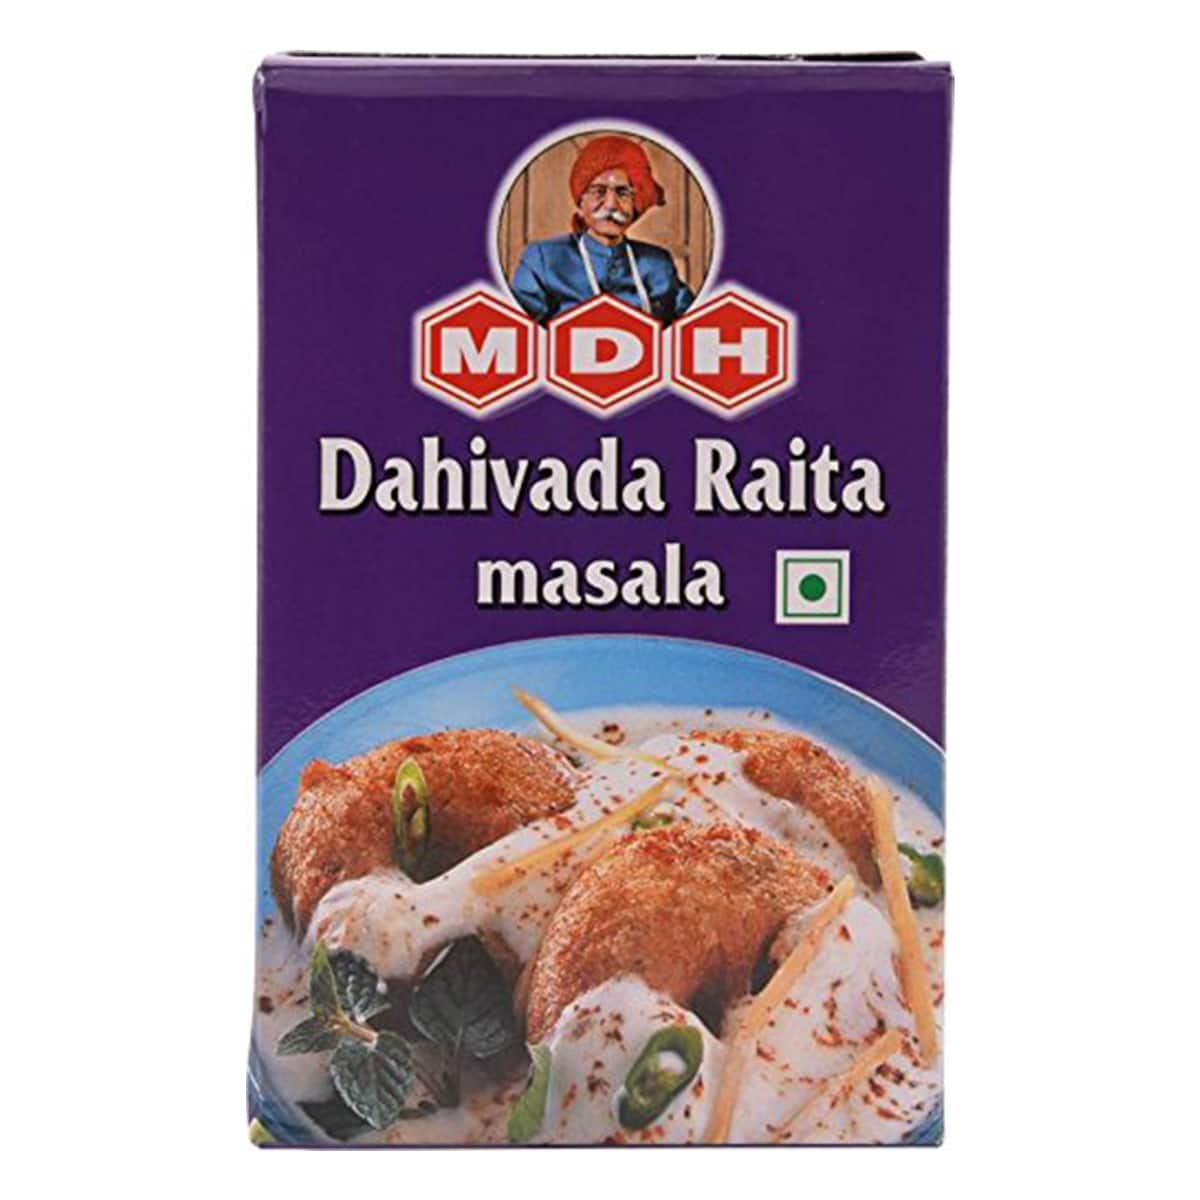 Buy MDH Dahivada Raita Masala - 100 gm